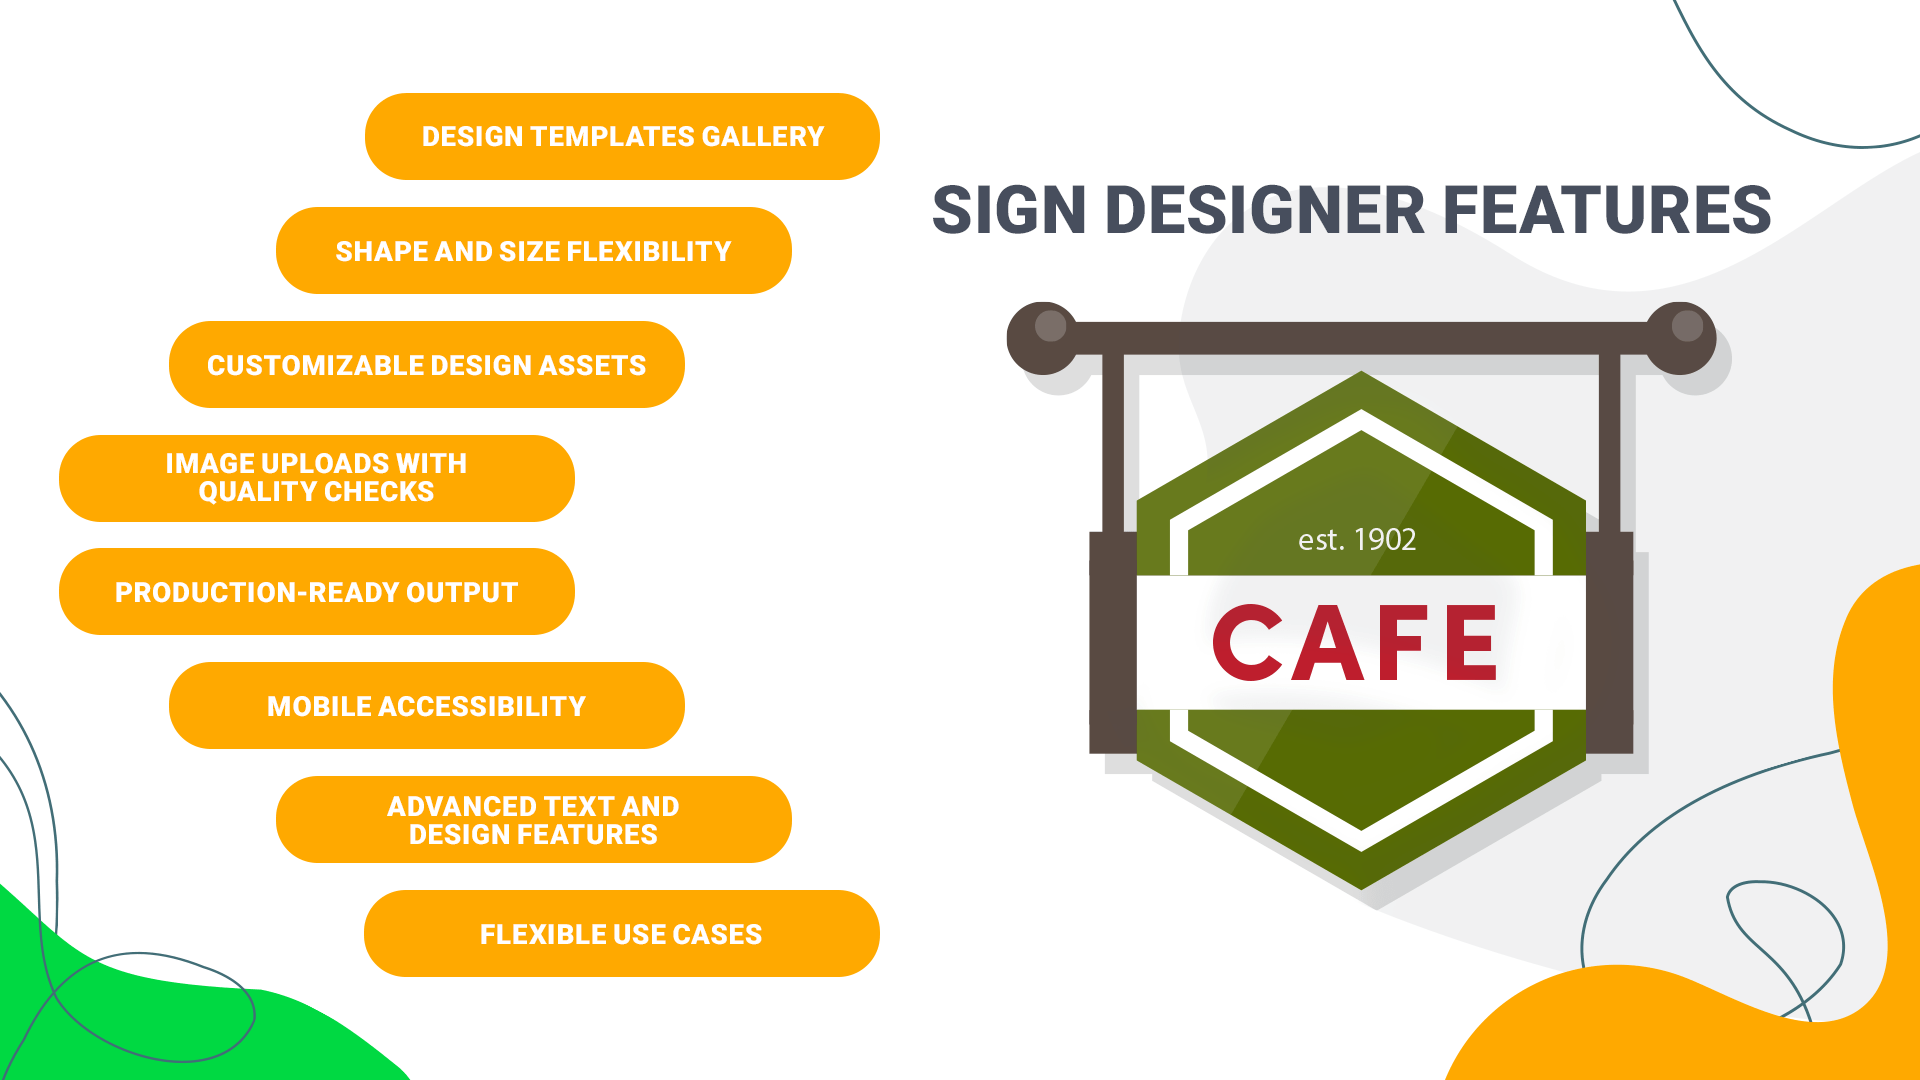 Sign Designer Features